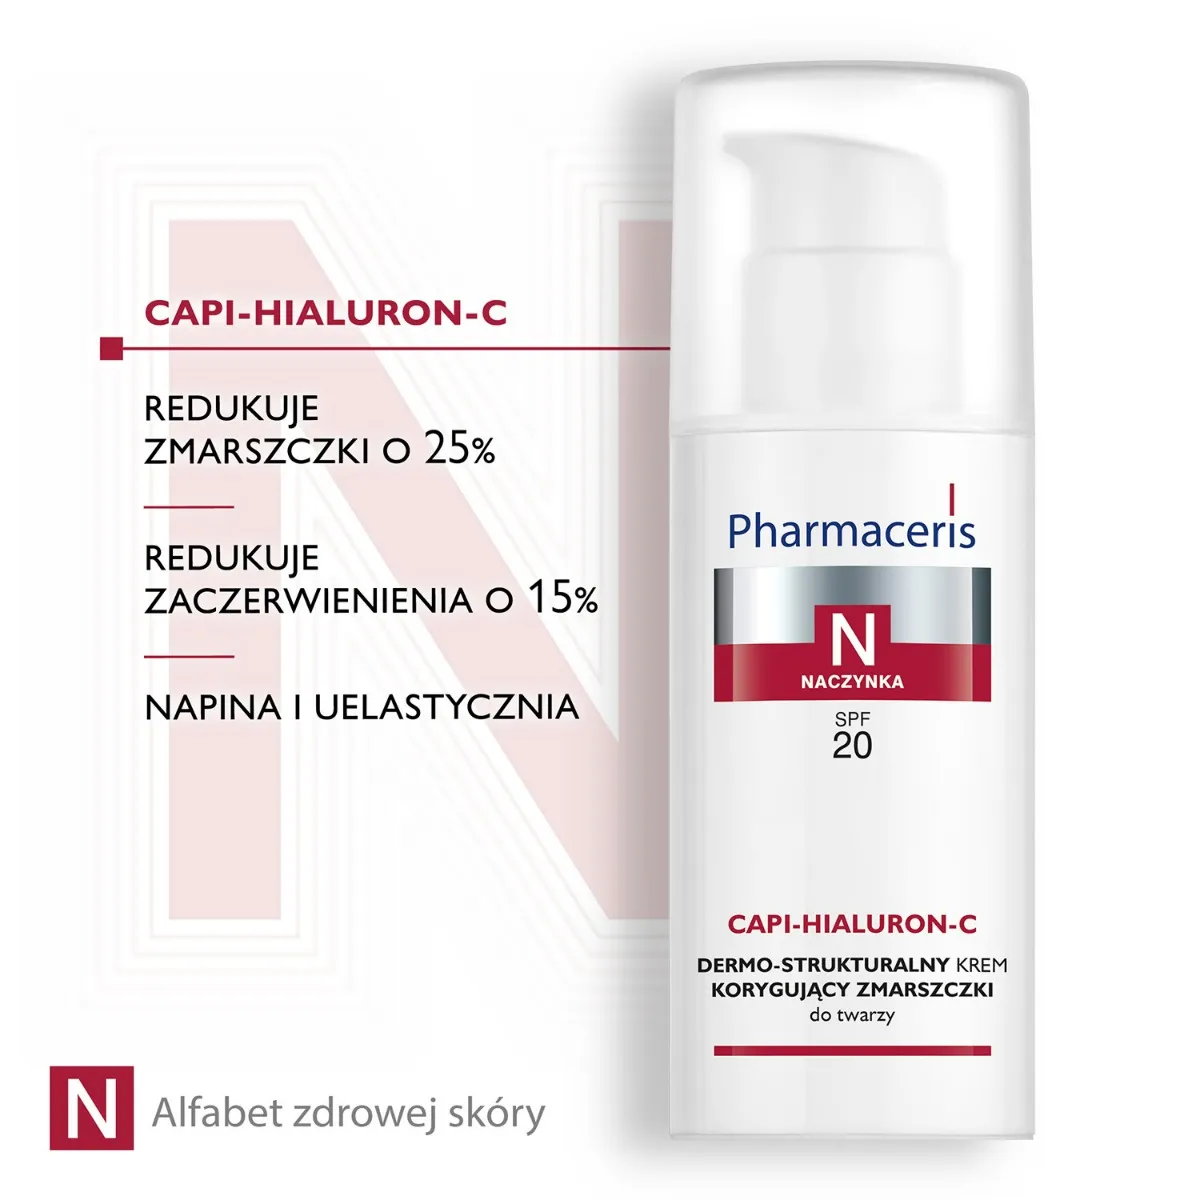 Pharmaceris N Capi-Hialuron-C Dermo-strukturalny krem korygujący zmarszczki SPF 20 / 50 ml 